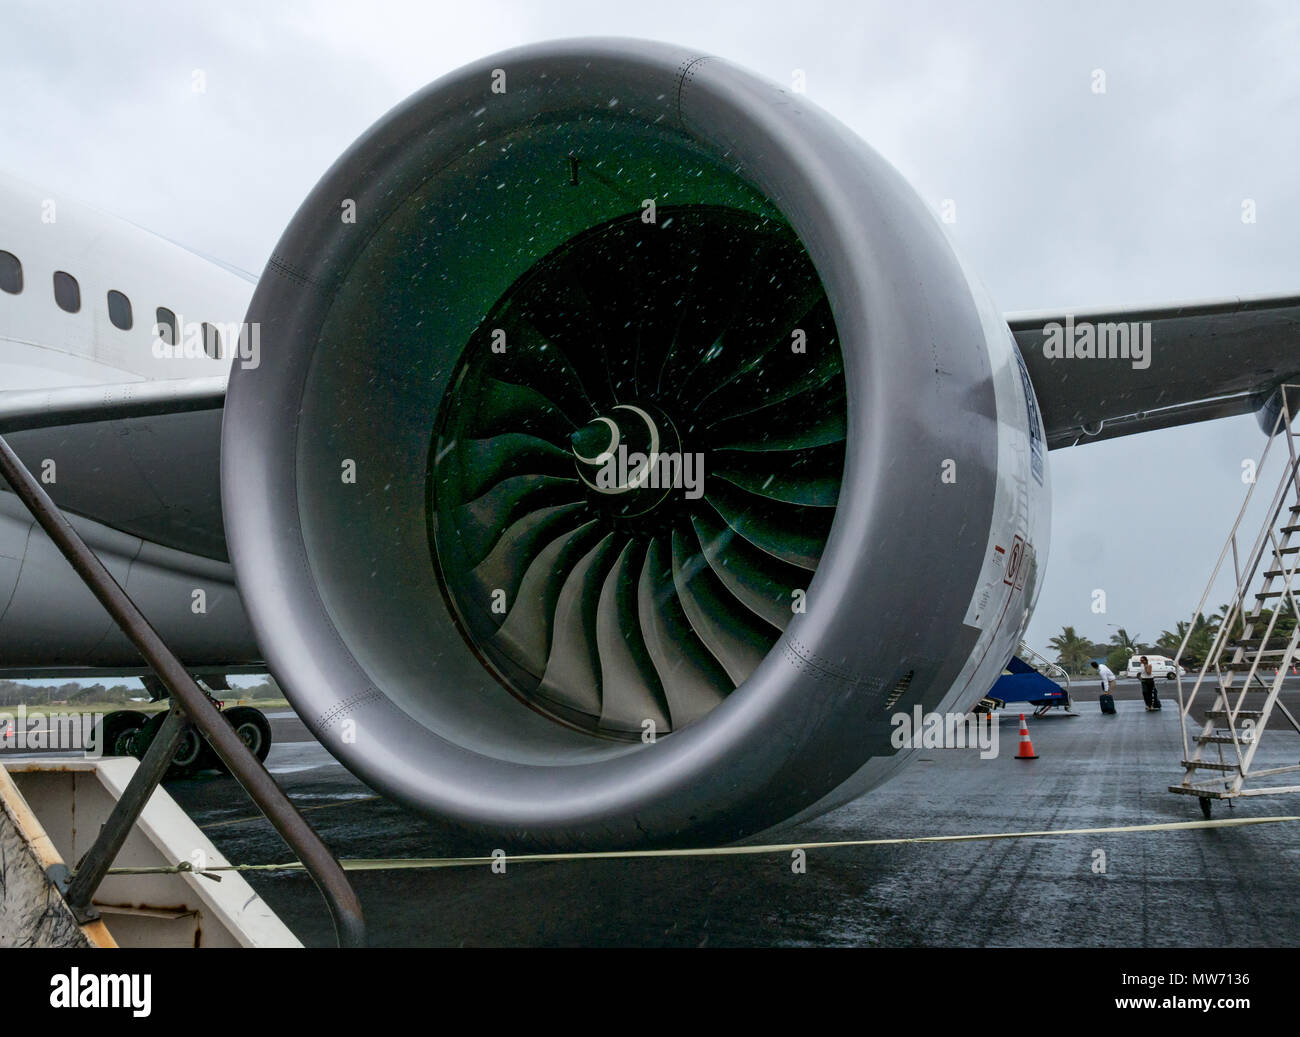 Close up de filage moteur Rolls Royce, compagnie aérienne LATAM Dreamliner 787 de Boeing à l'Aéroport International Mataveri piste, l'île de Pâques, Chili Banque D'Images